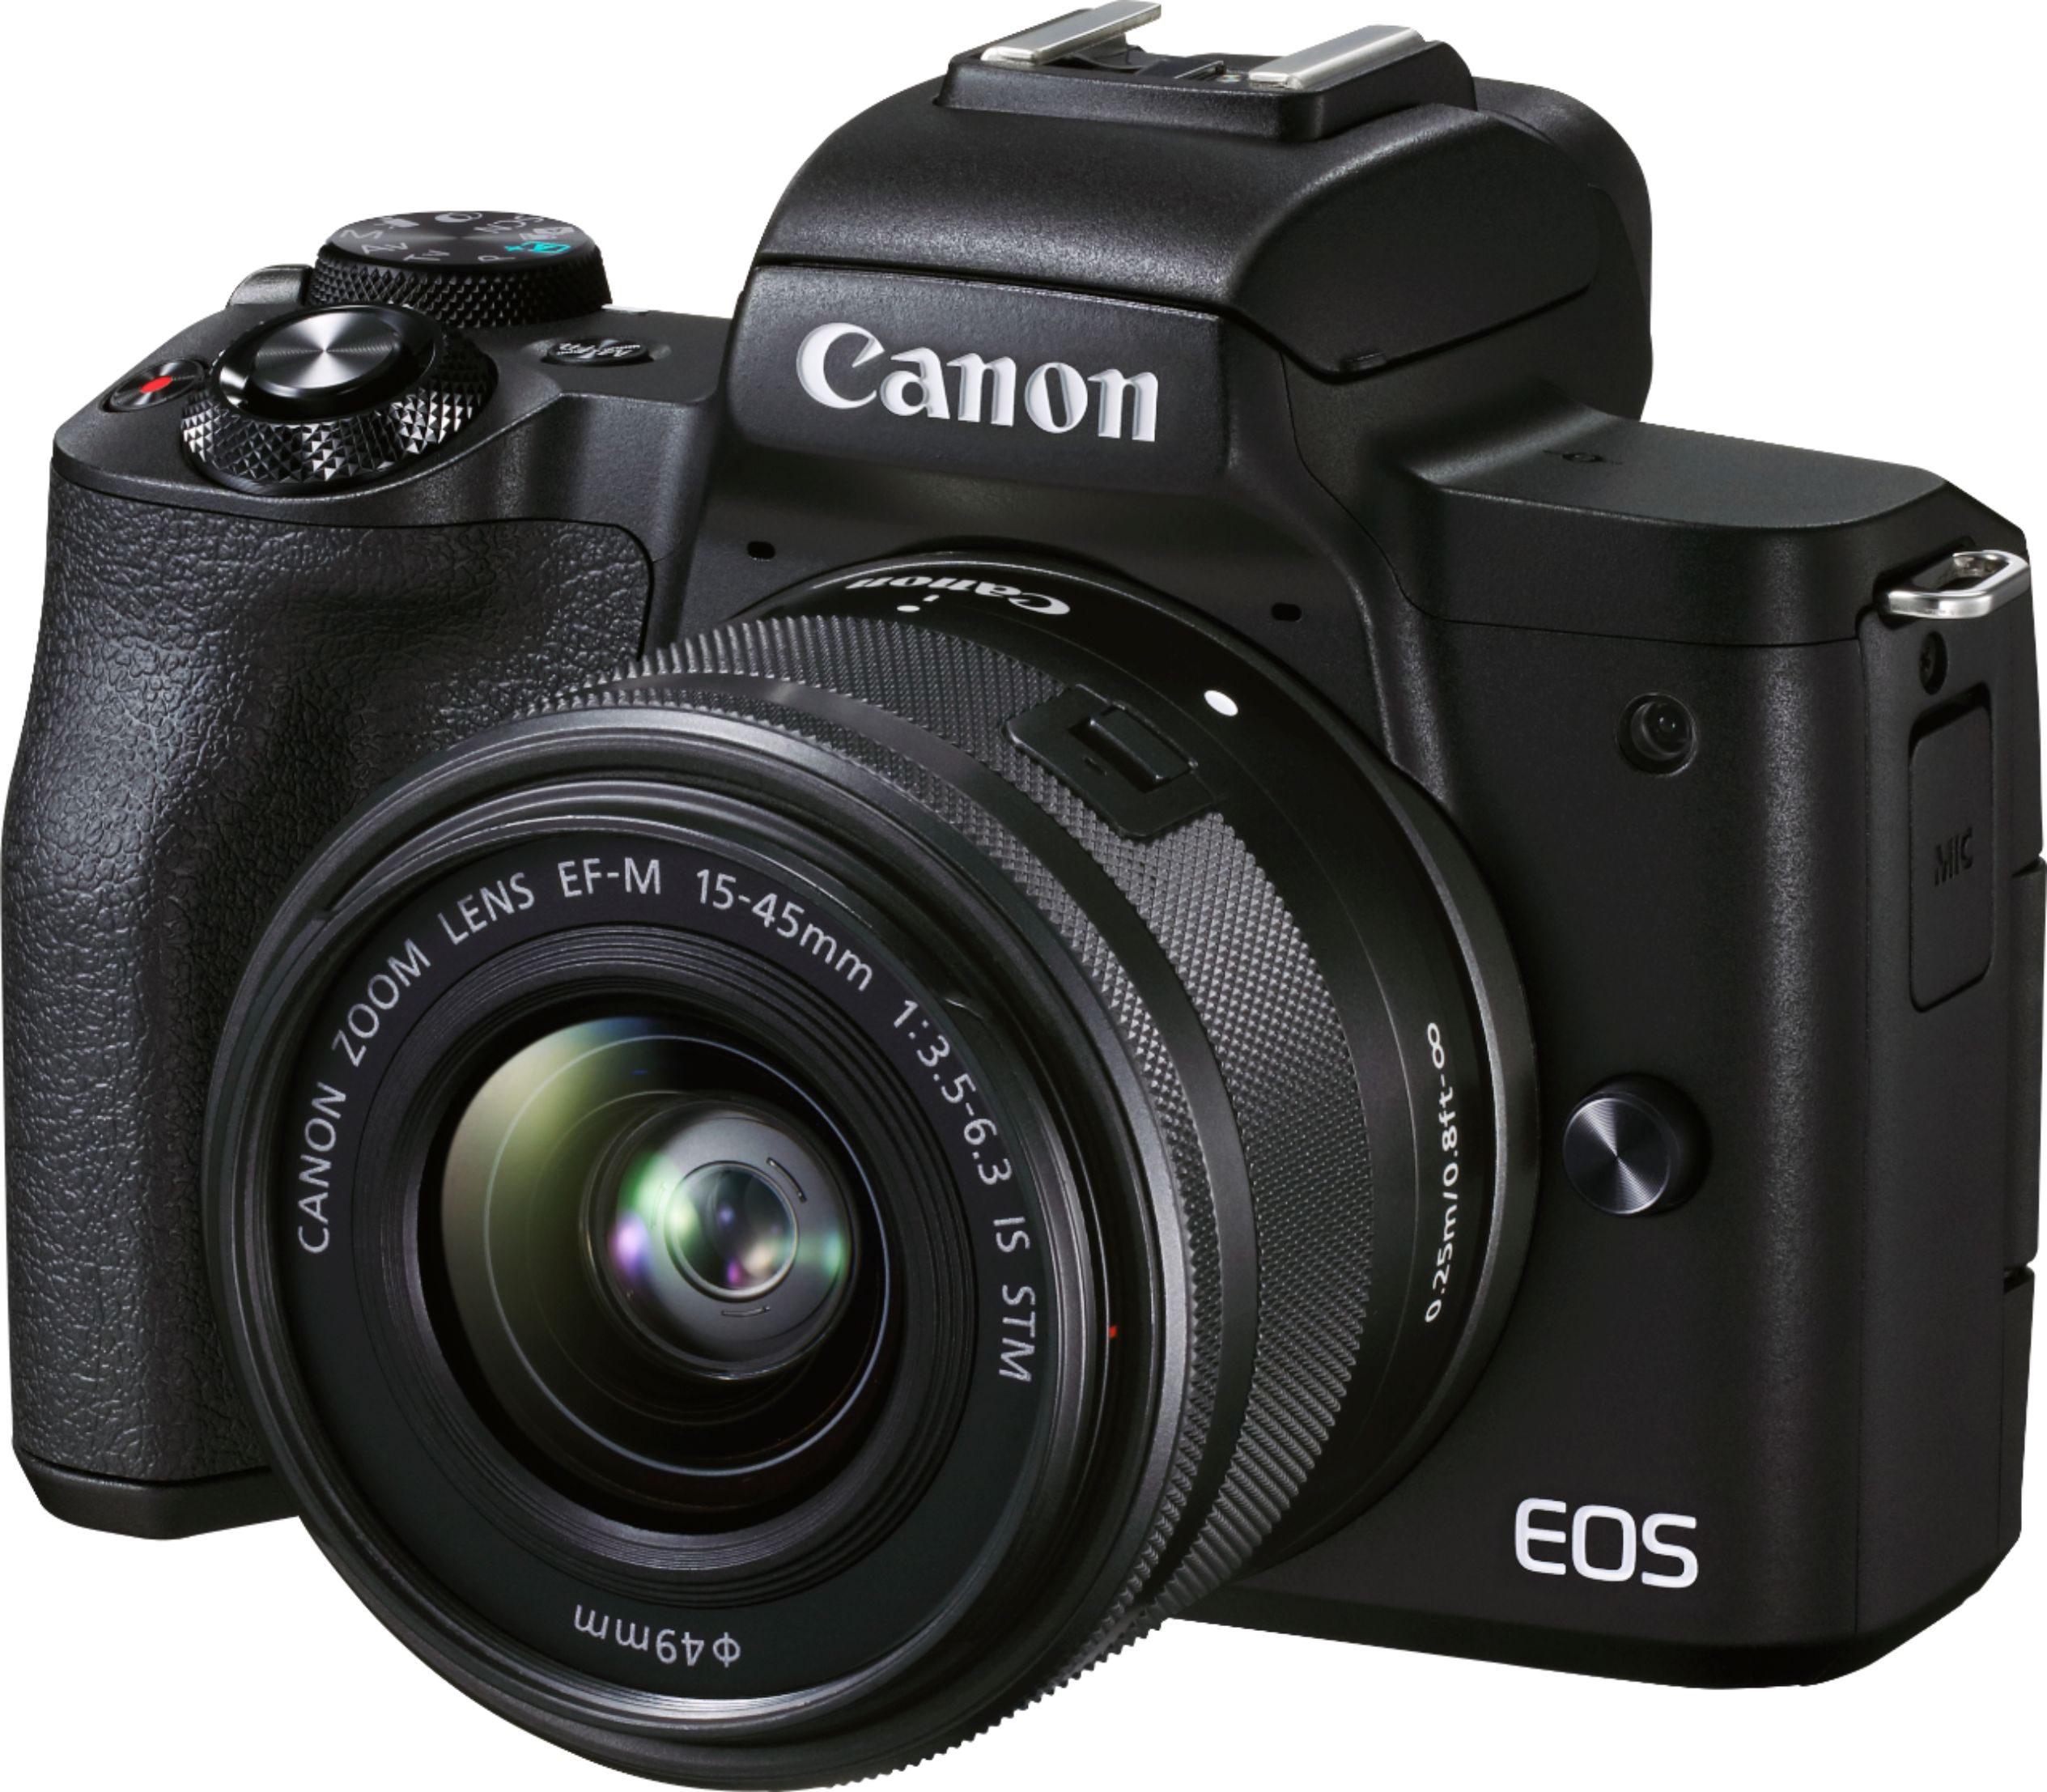 Canon Eos camera www.np.gov.lk